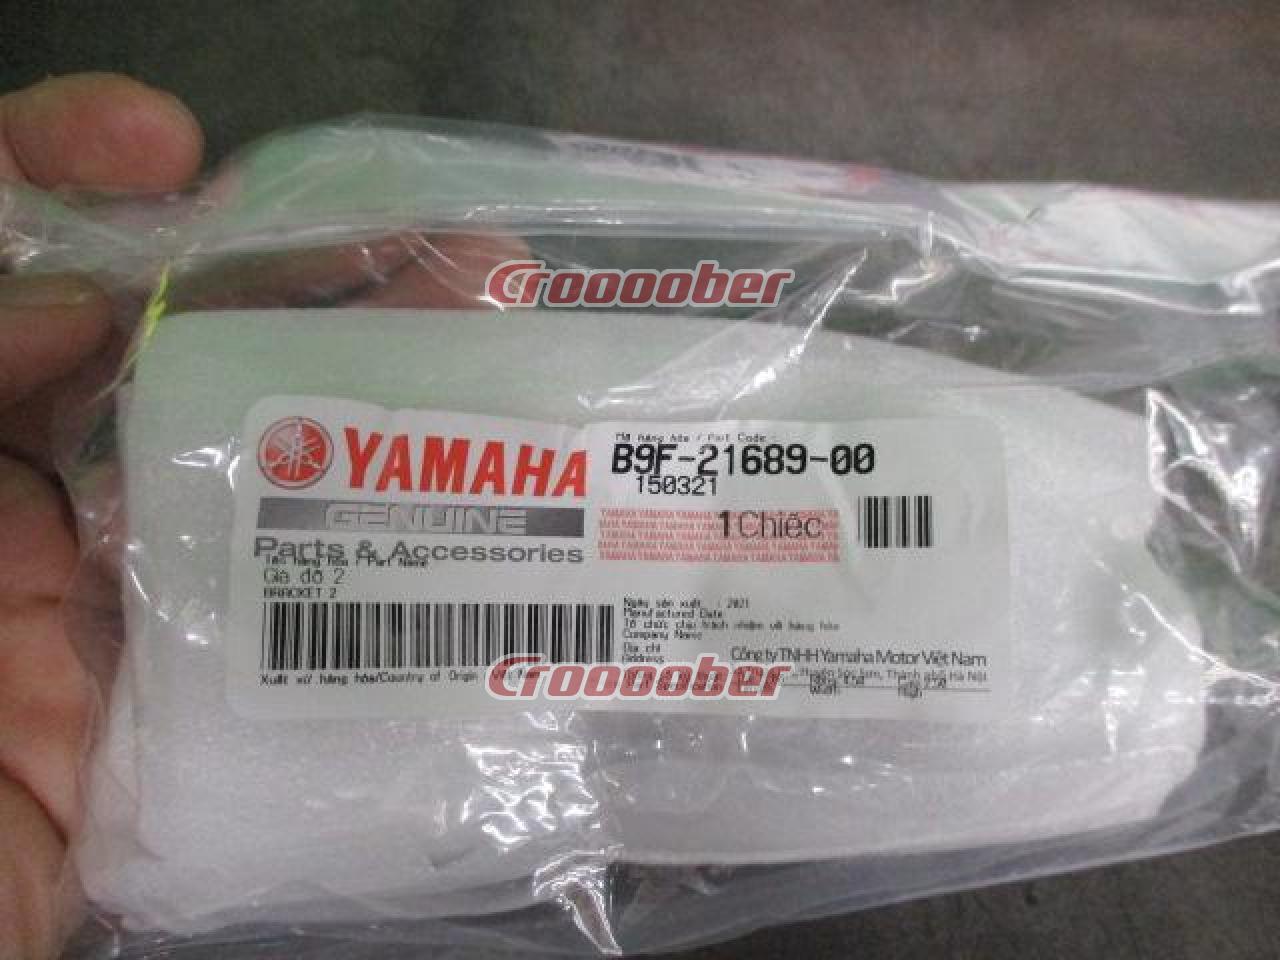 YAMAHA(ヤマハ) B9F-211H0-01 パフォーマンスダンパー SR400(FI